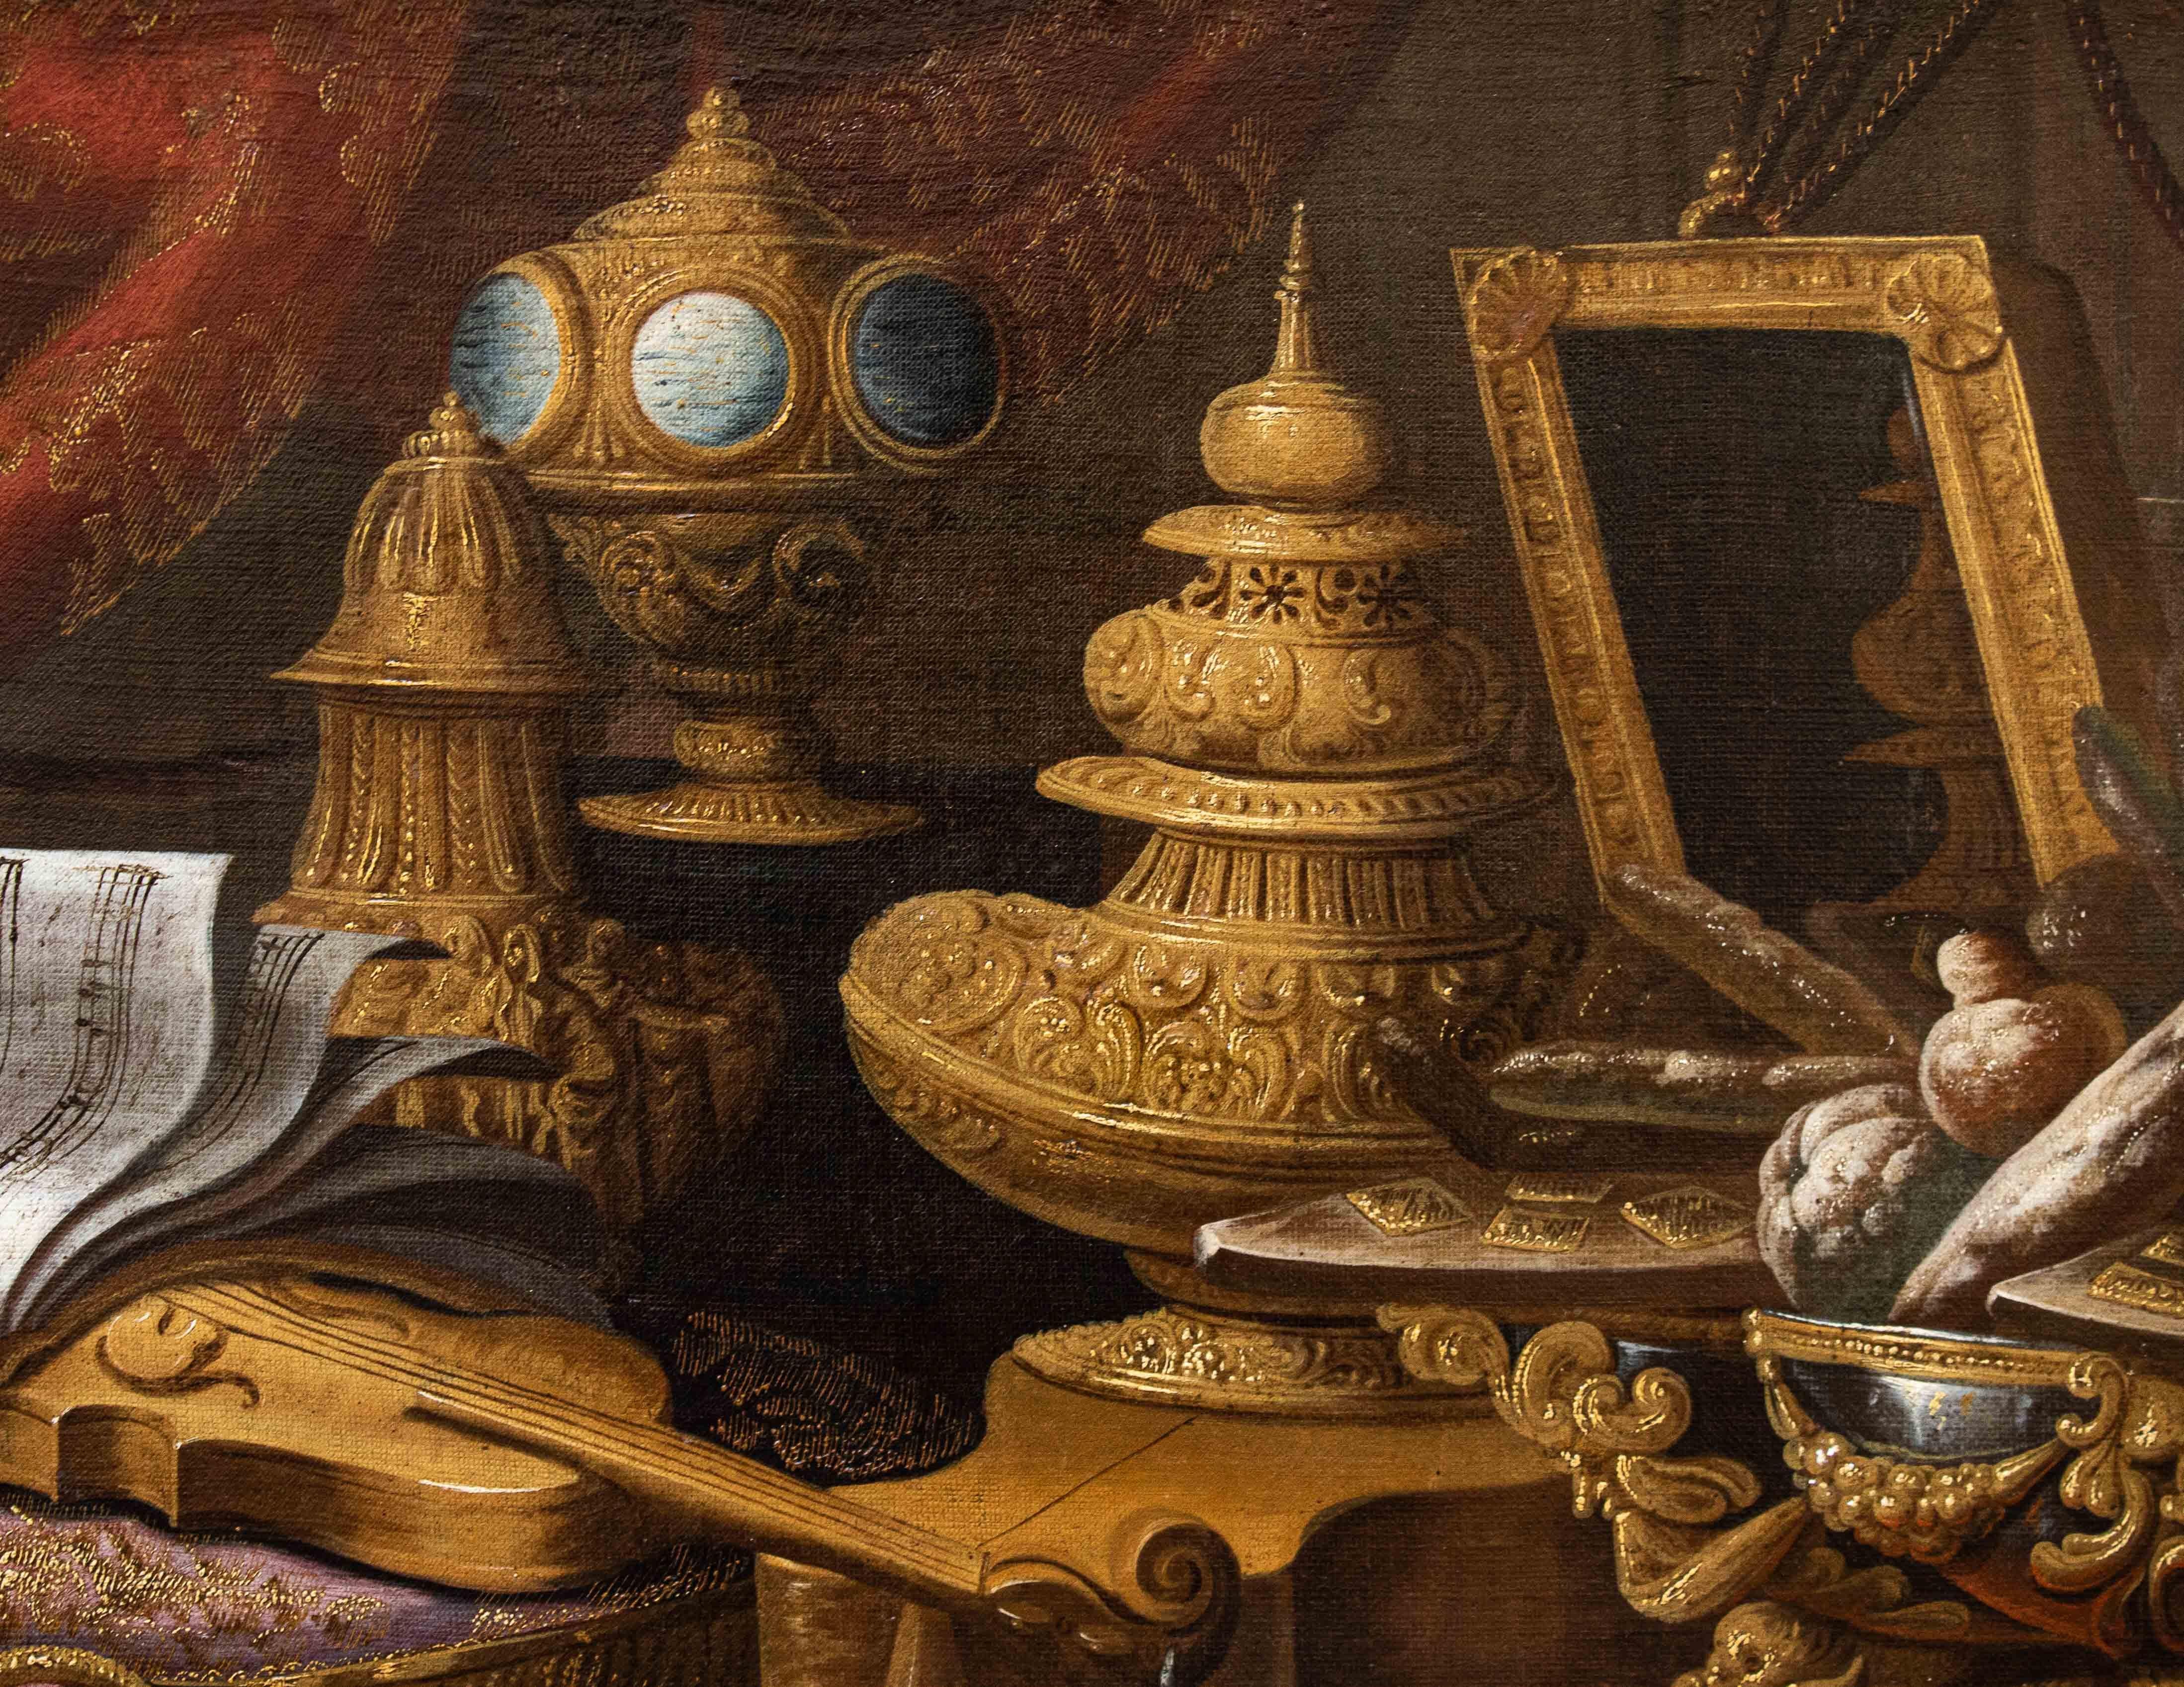 Antonio Tibaldi, genannt der Graf (Rom, 1633 - dokumentiert bis 1675)

Stilleben mit Musikinstrumenten, Notenblättern und Tortenständer

Öl auf Leinwand, 120 x 169 cm

Rahmen, 132 x 181,5 cm

Dieses Stillleben mit Musikinstrumenten, einem